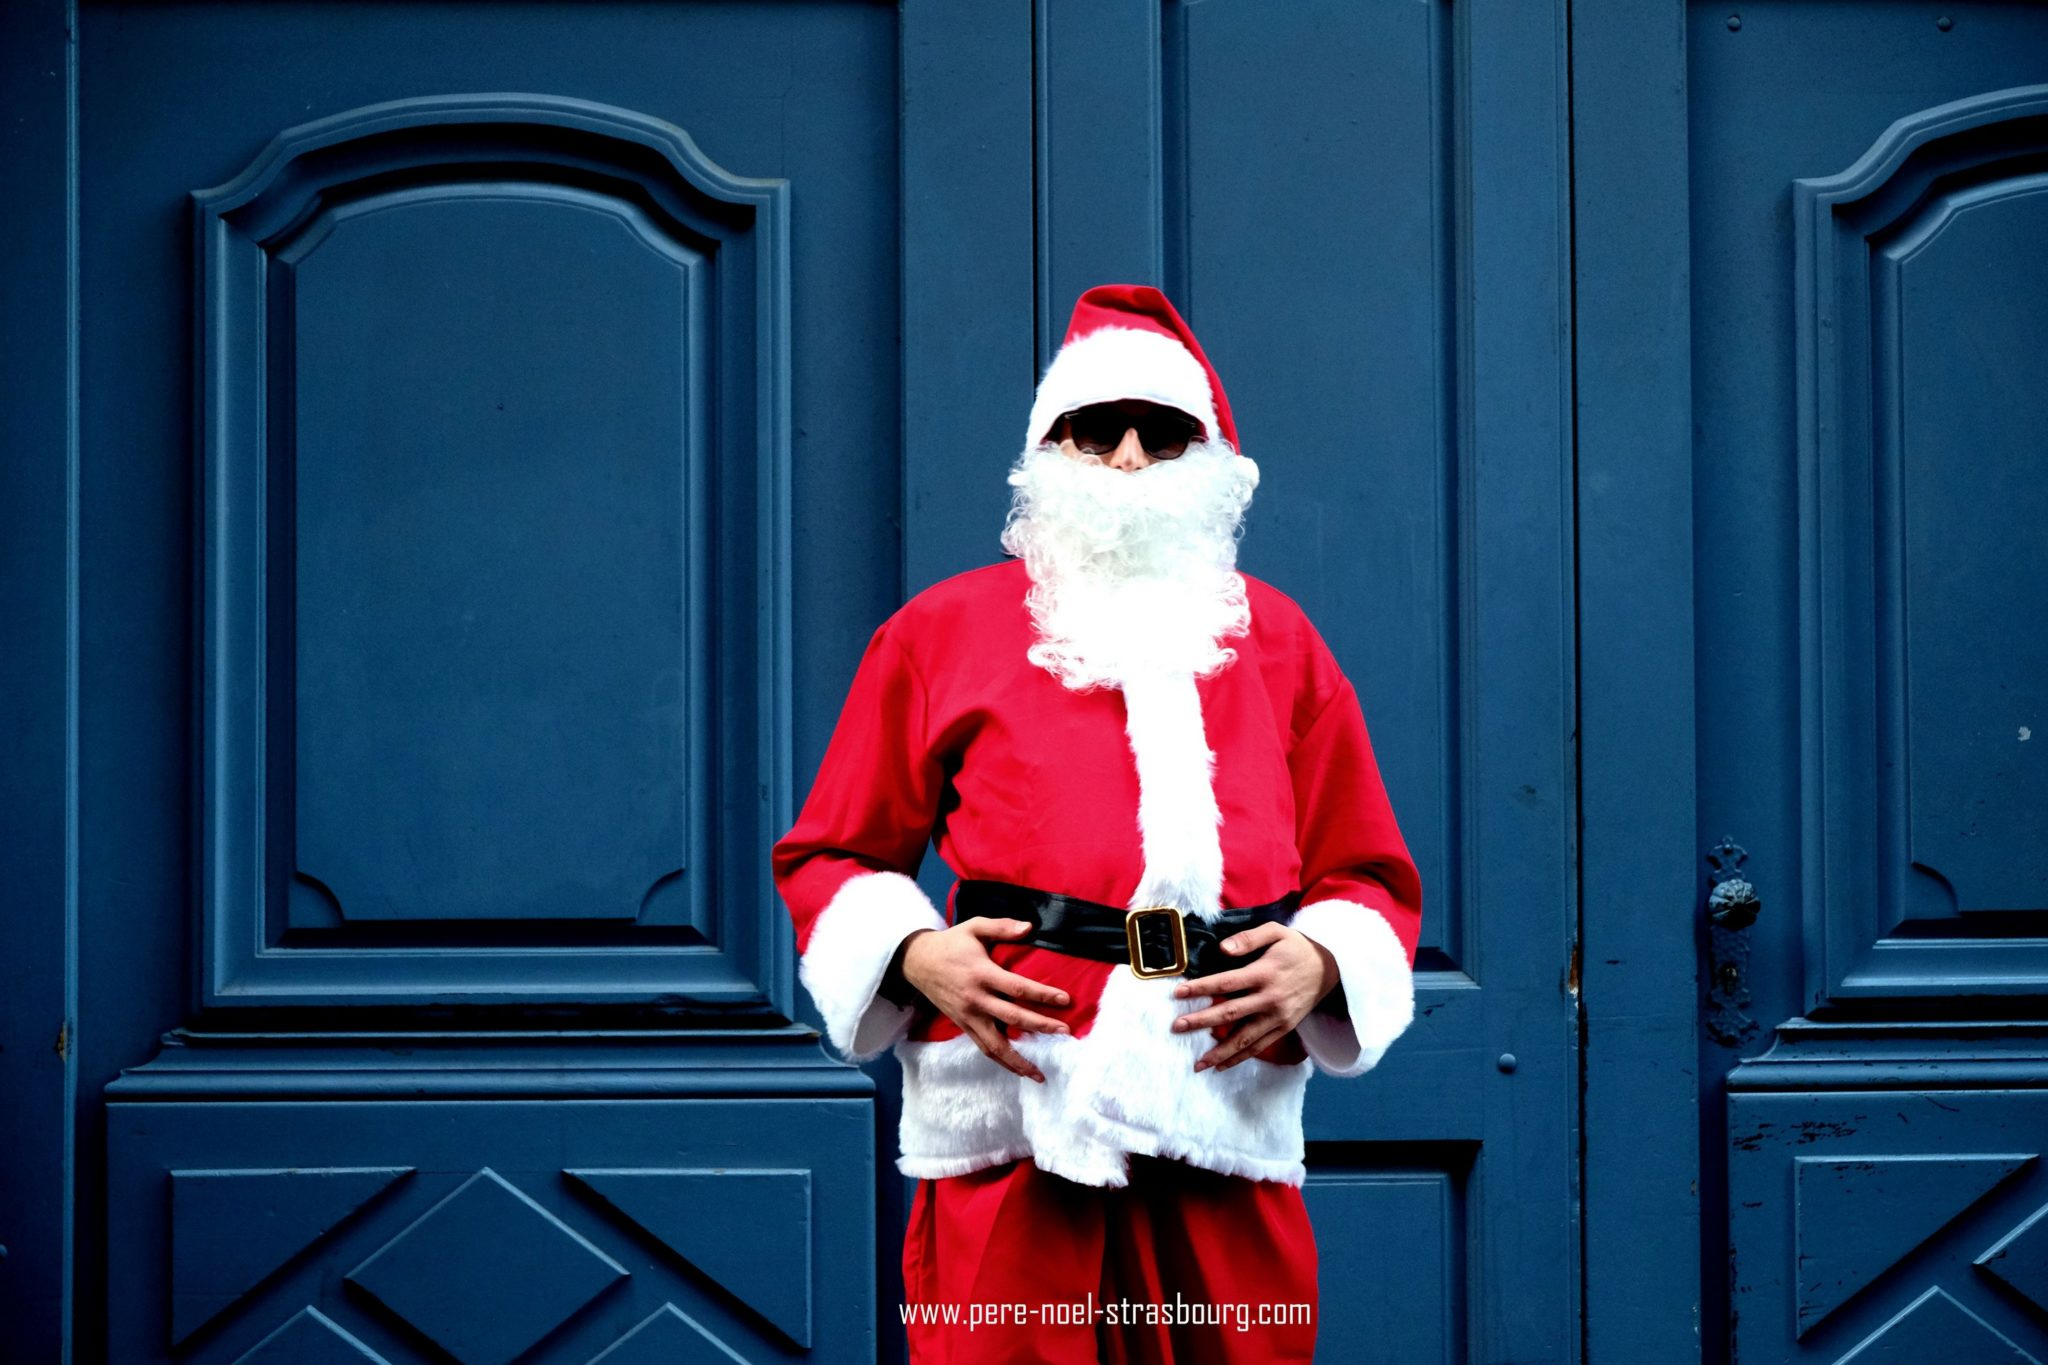 Le Père Noël Vous Invite À Strasbourg: Visites Guidées Au avec Pere Neol 